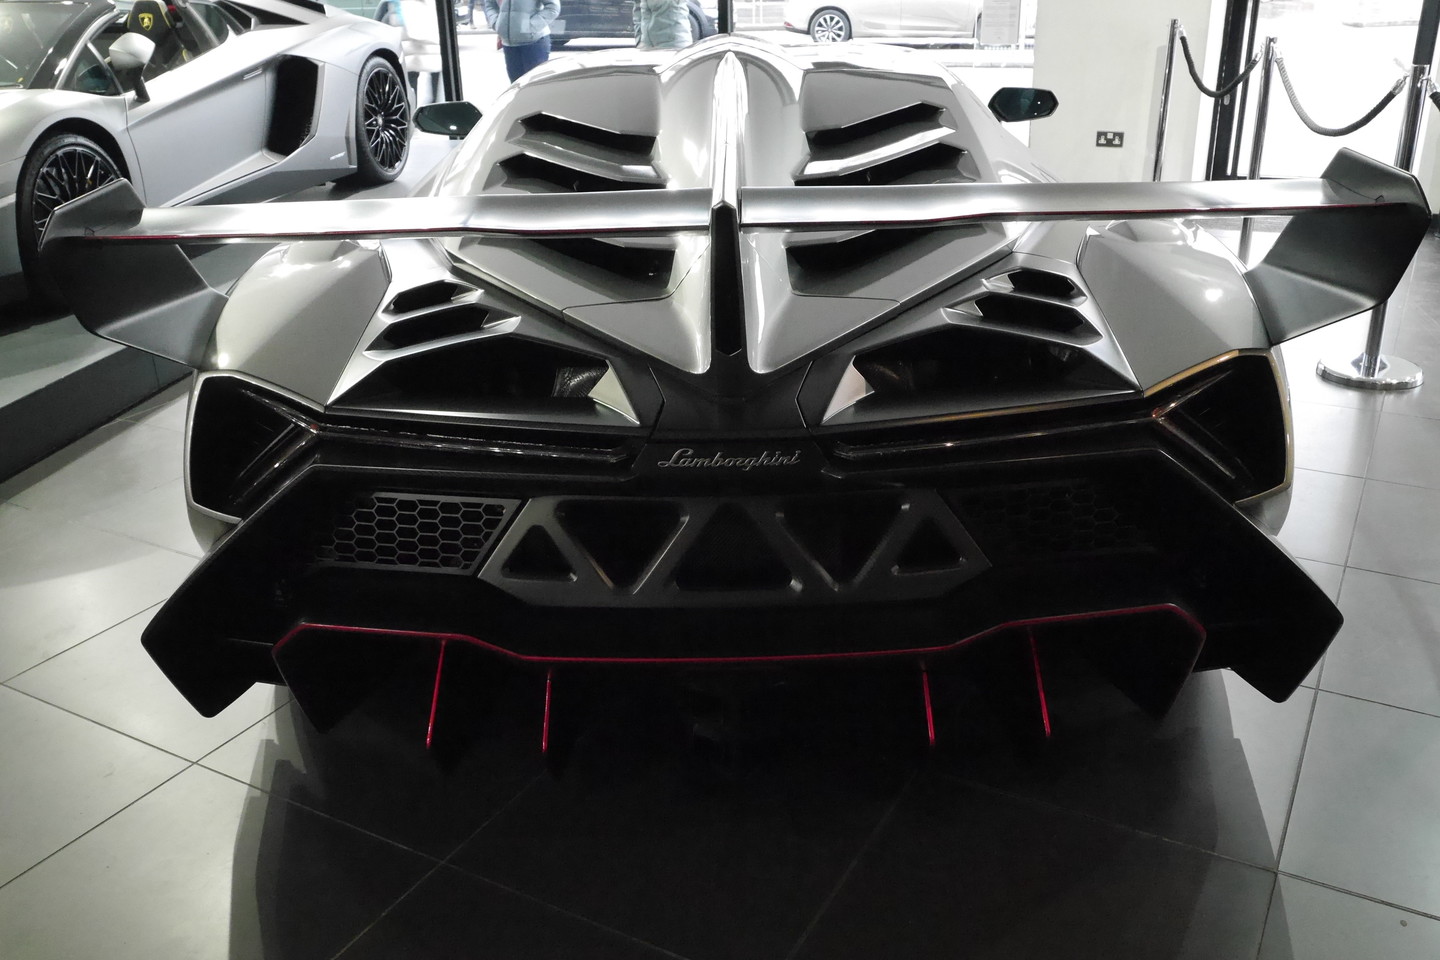 Vos 180 kilometrų pravažiavęs „Lamborghini Veneno“ parduodamas už 8 mln. eurų. <br>newspress.co.uk nuotr.